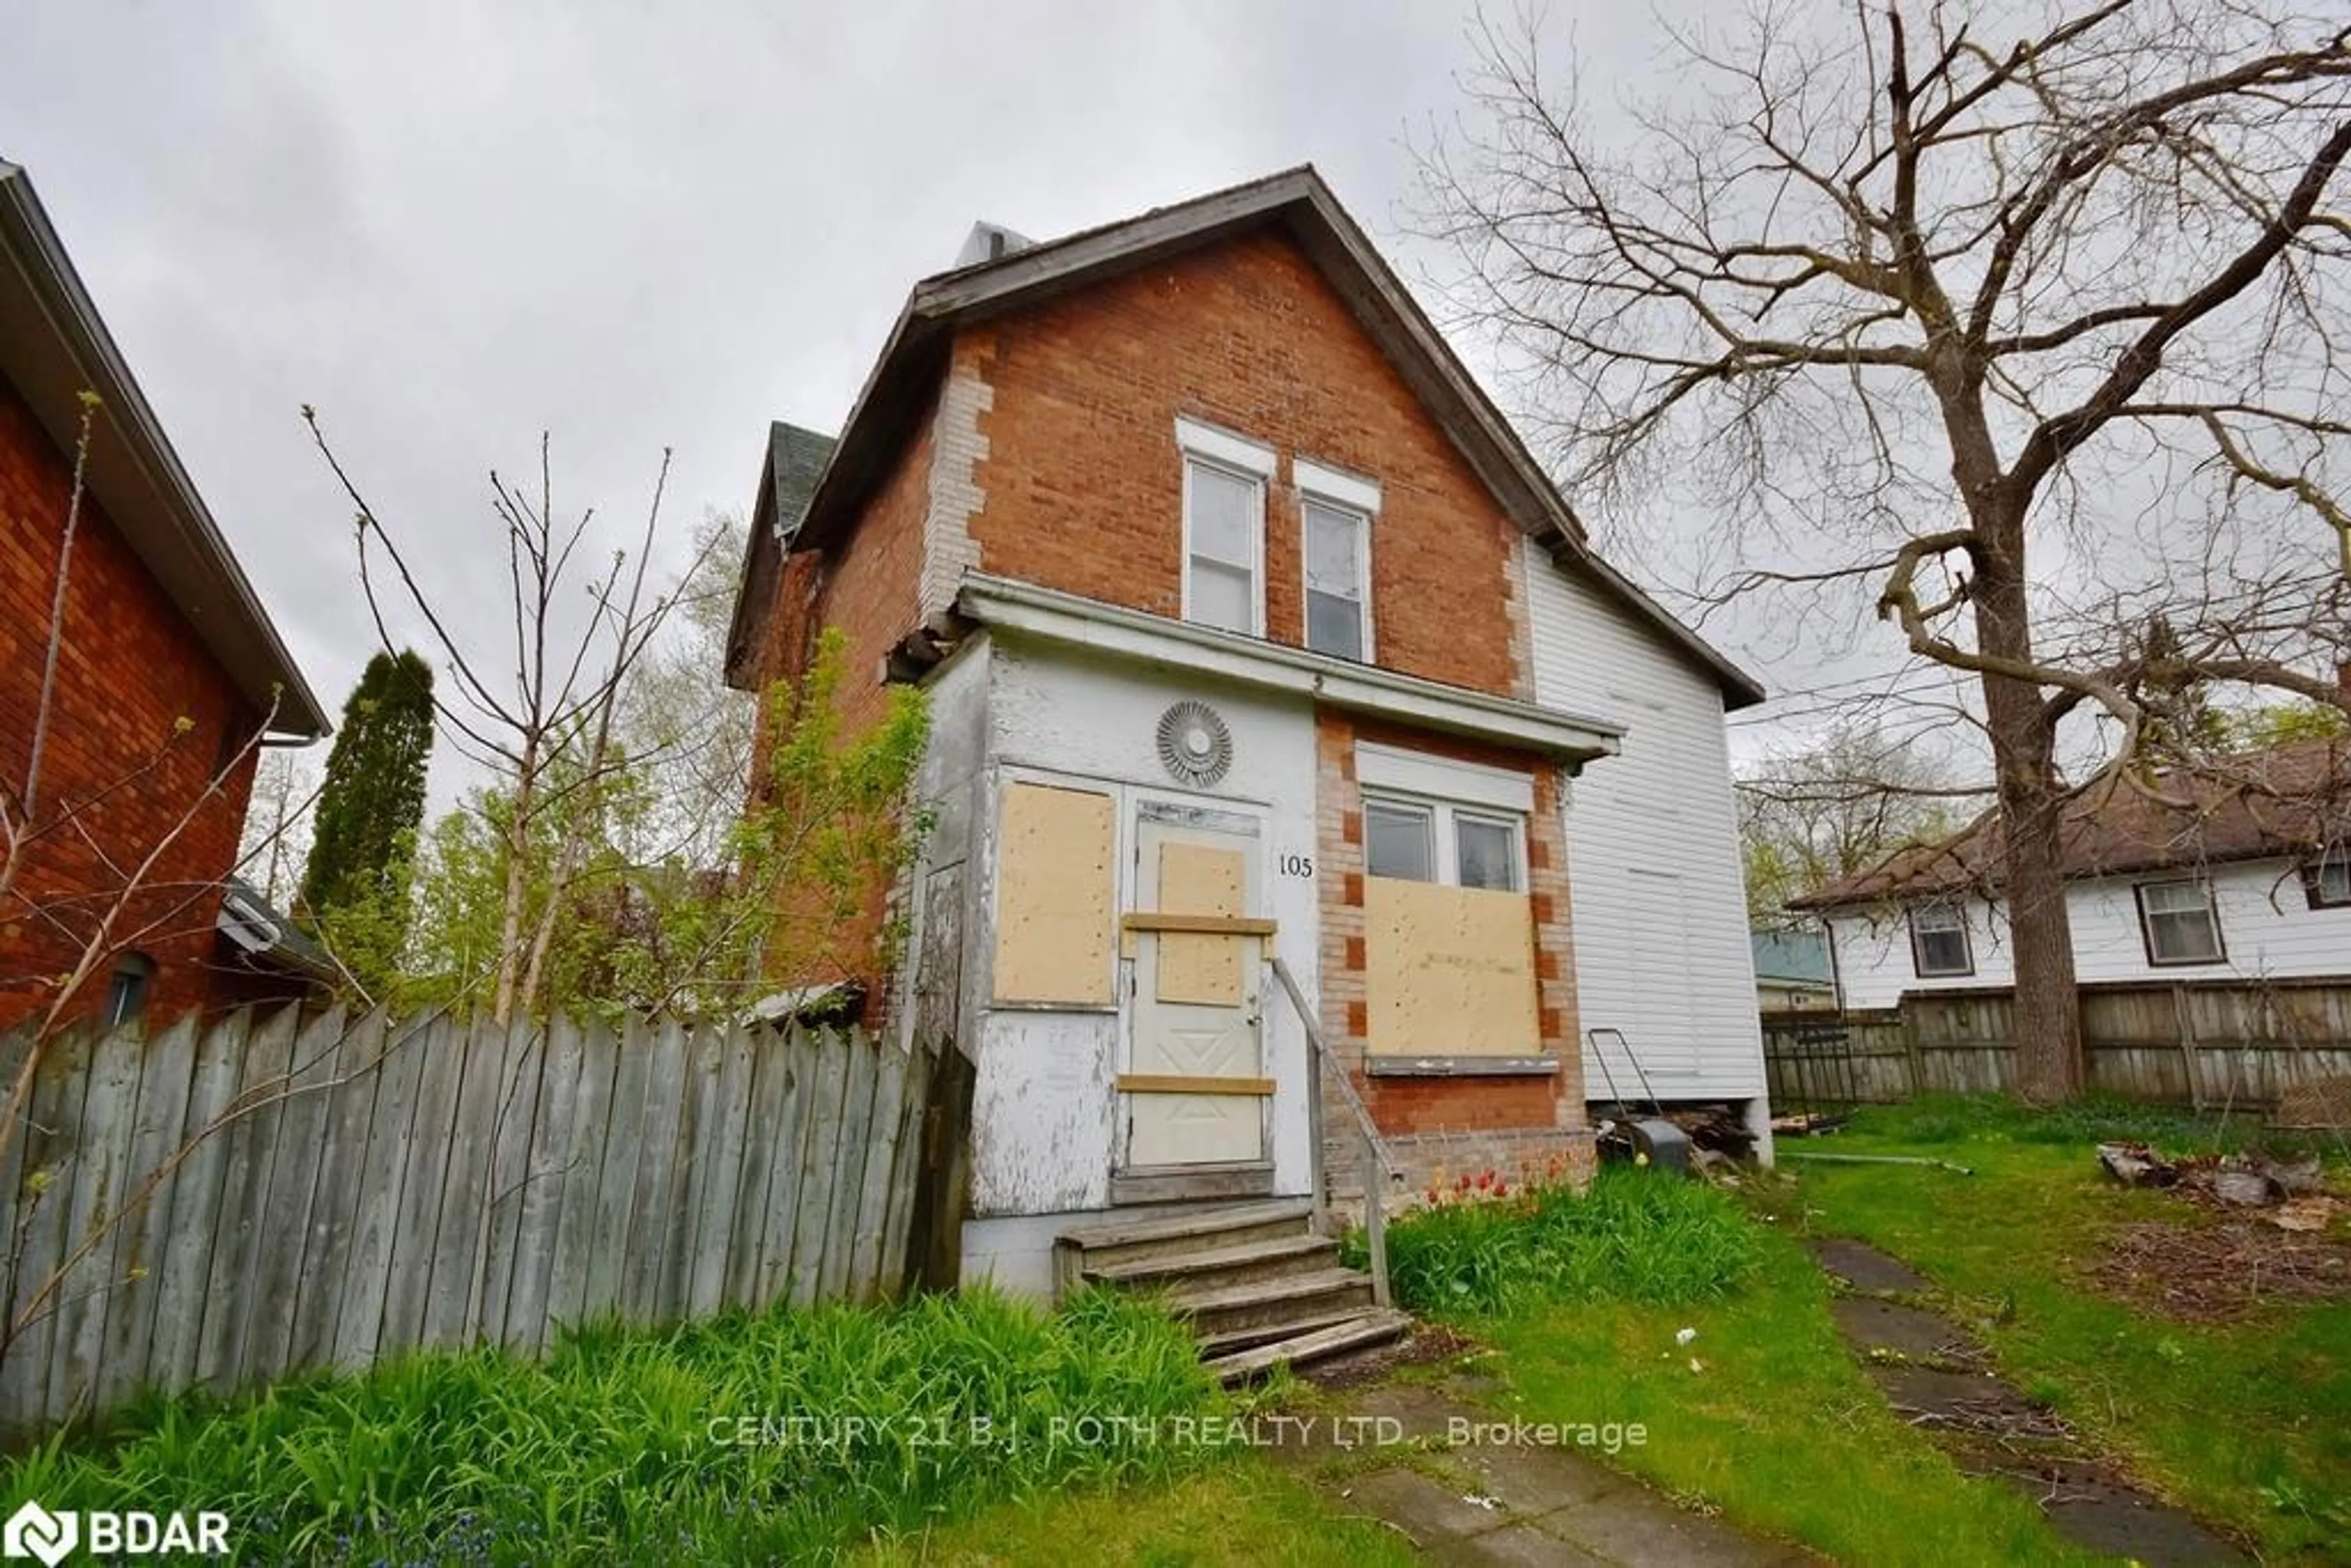 Frontside or backside of a home for 105 MATCHEDASH St, Orillia Ontario L3V 4W9